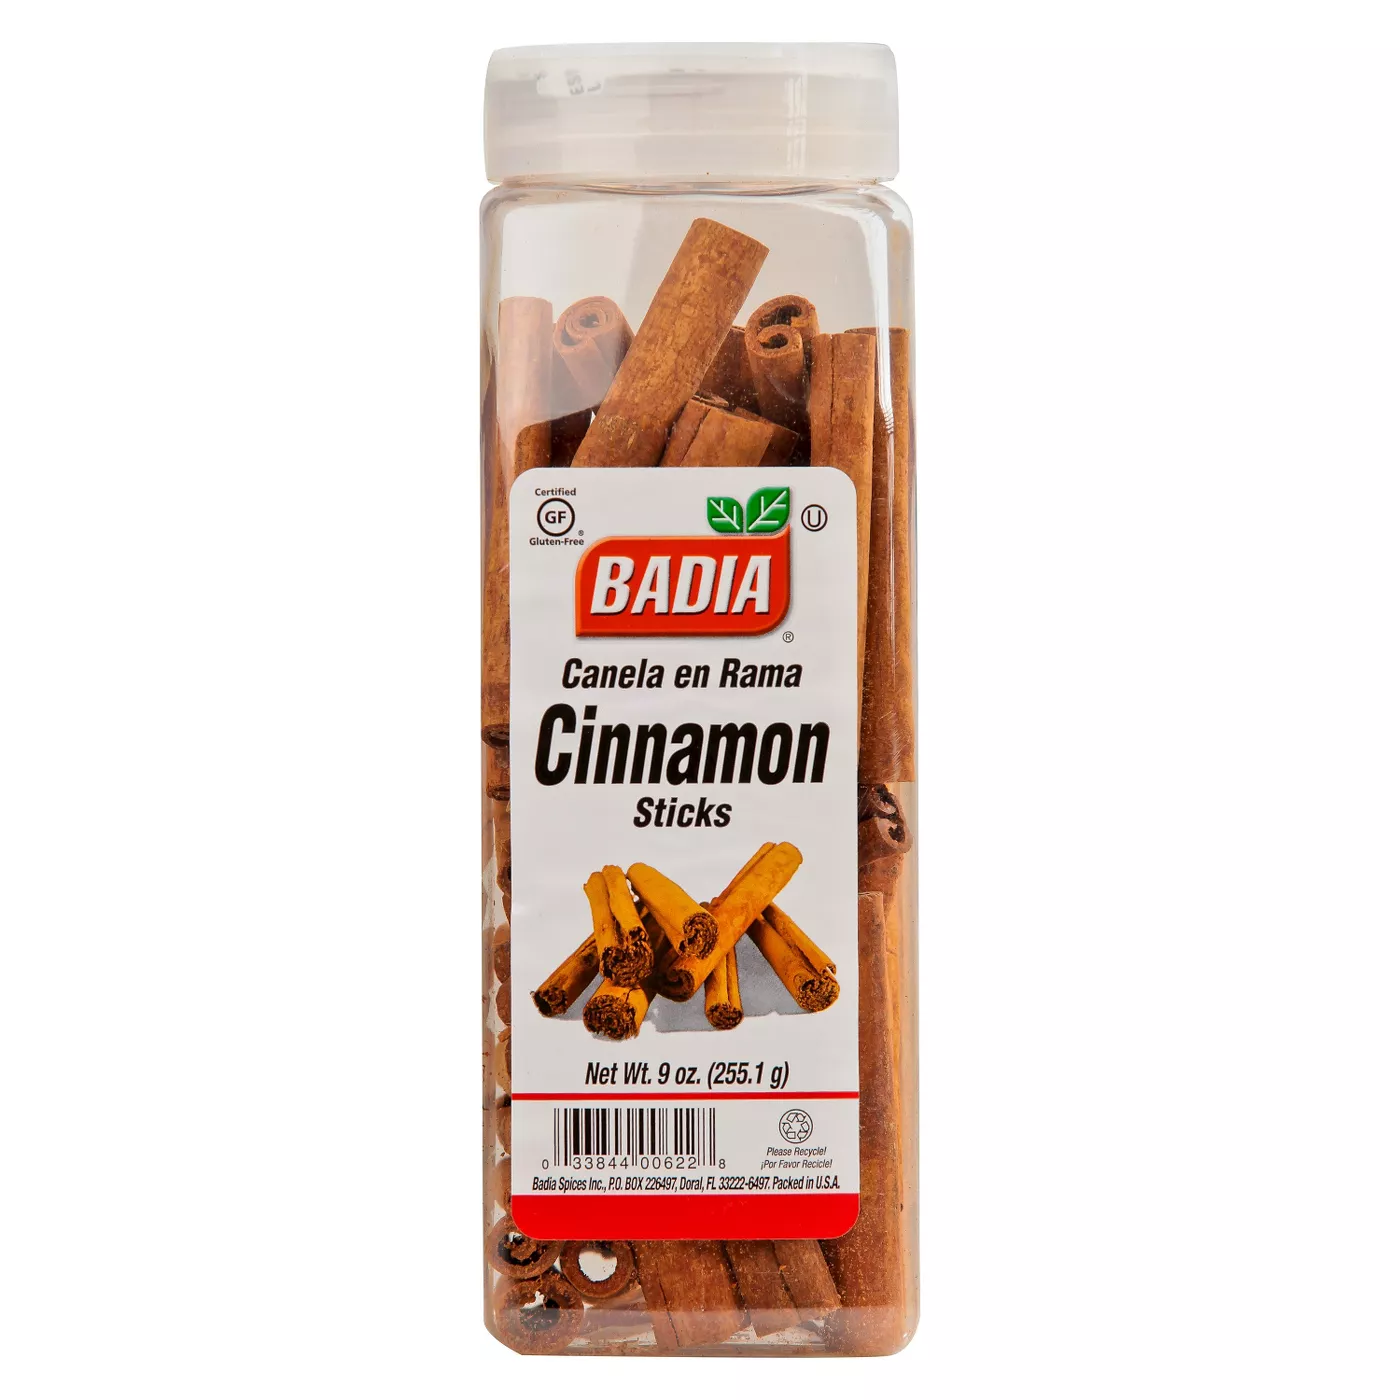 BadiaÂ® Cinnamon Sticks 9 oz - image 1 of 1